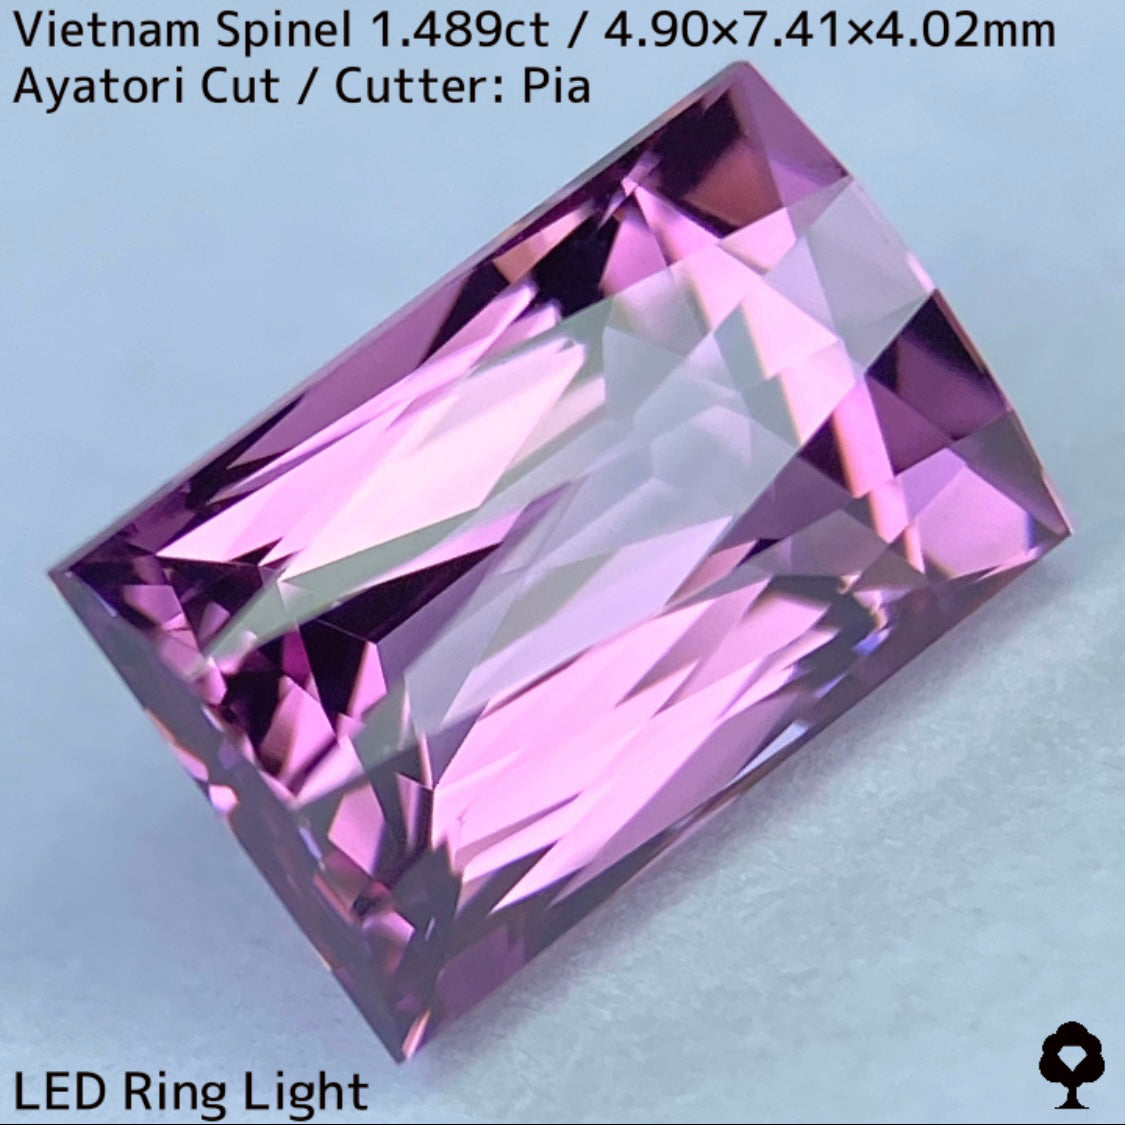 ベトナム産スピネル1.489ct★妖艶なピンキッシュパープルの超美結晶原石の形を生かしたシザースのあやとりカット